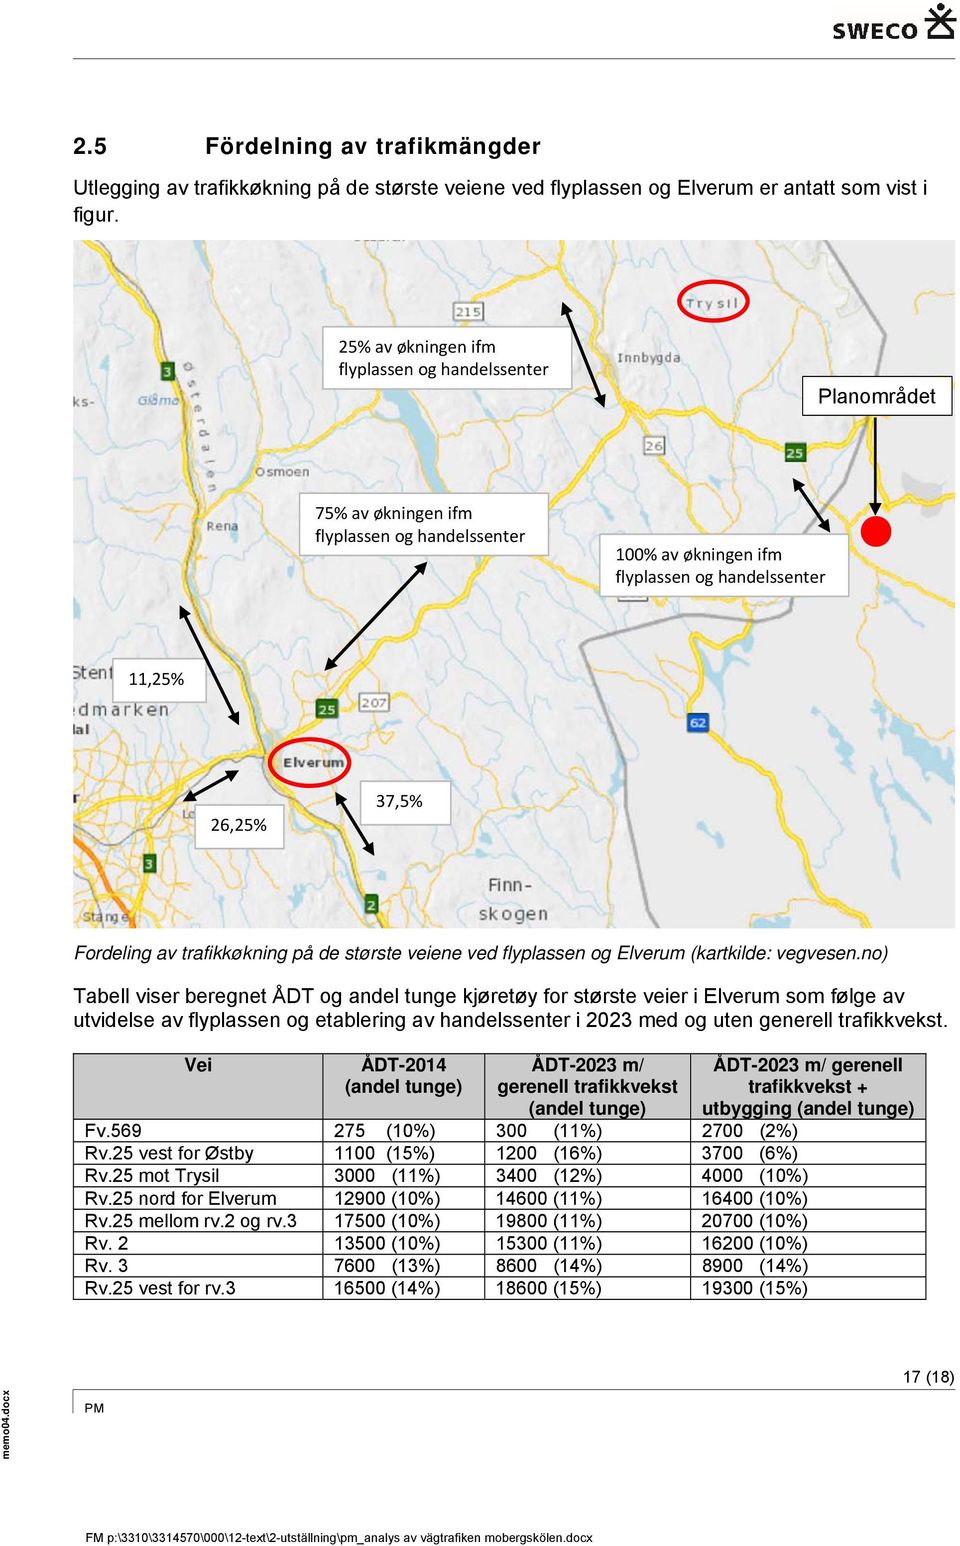 trafikkøkning på de største veiene ved flyplassen og Elverum (kartkilde: vegvesen.